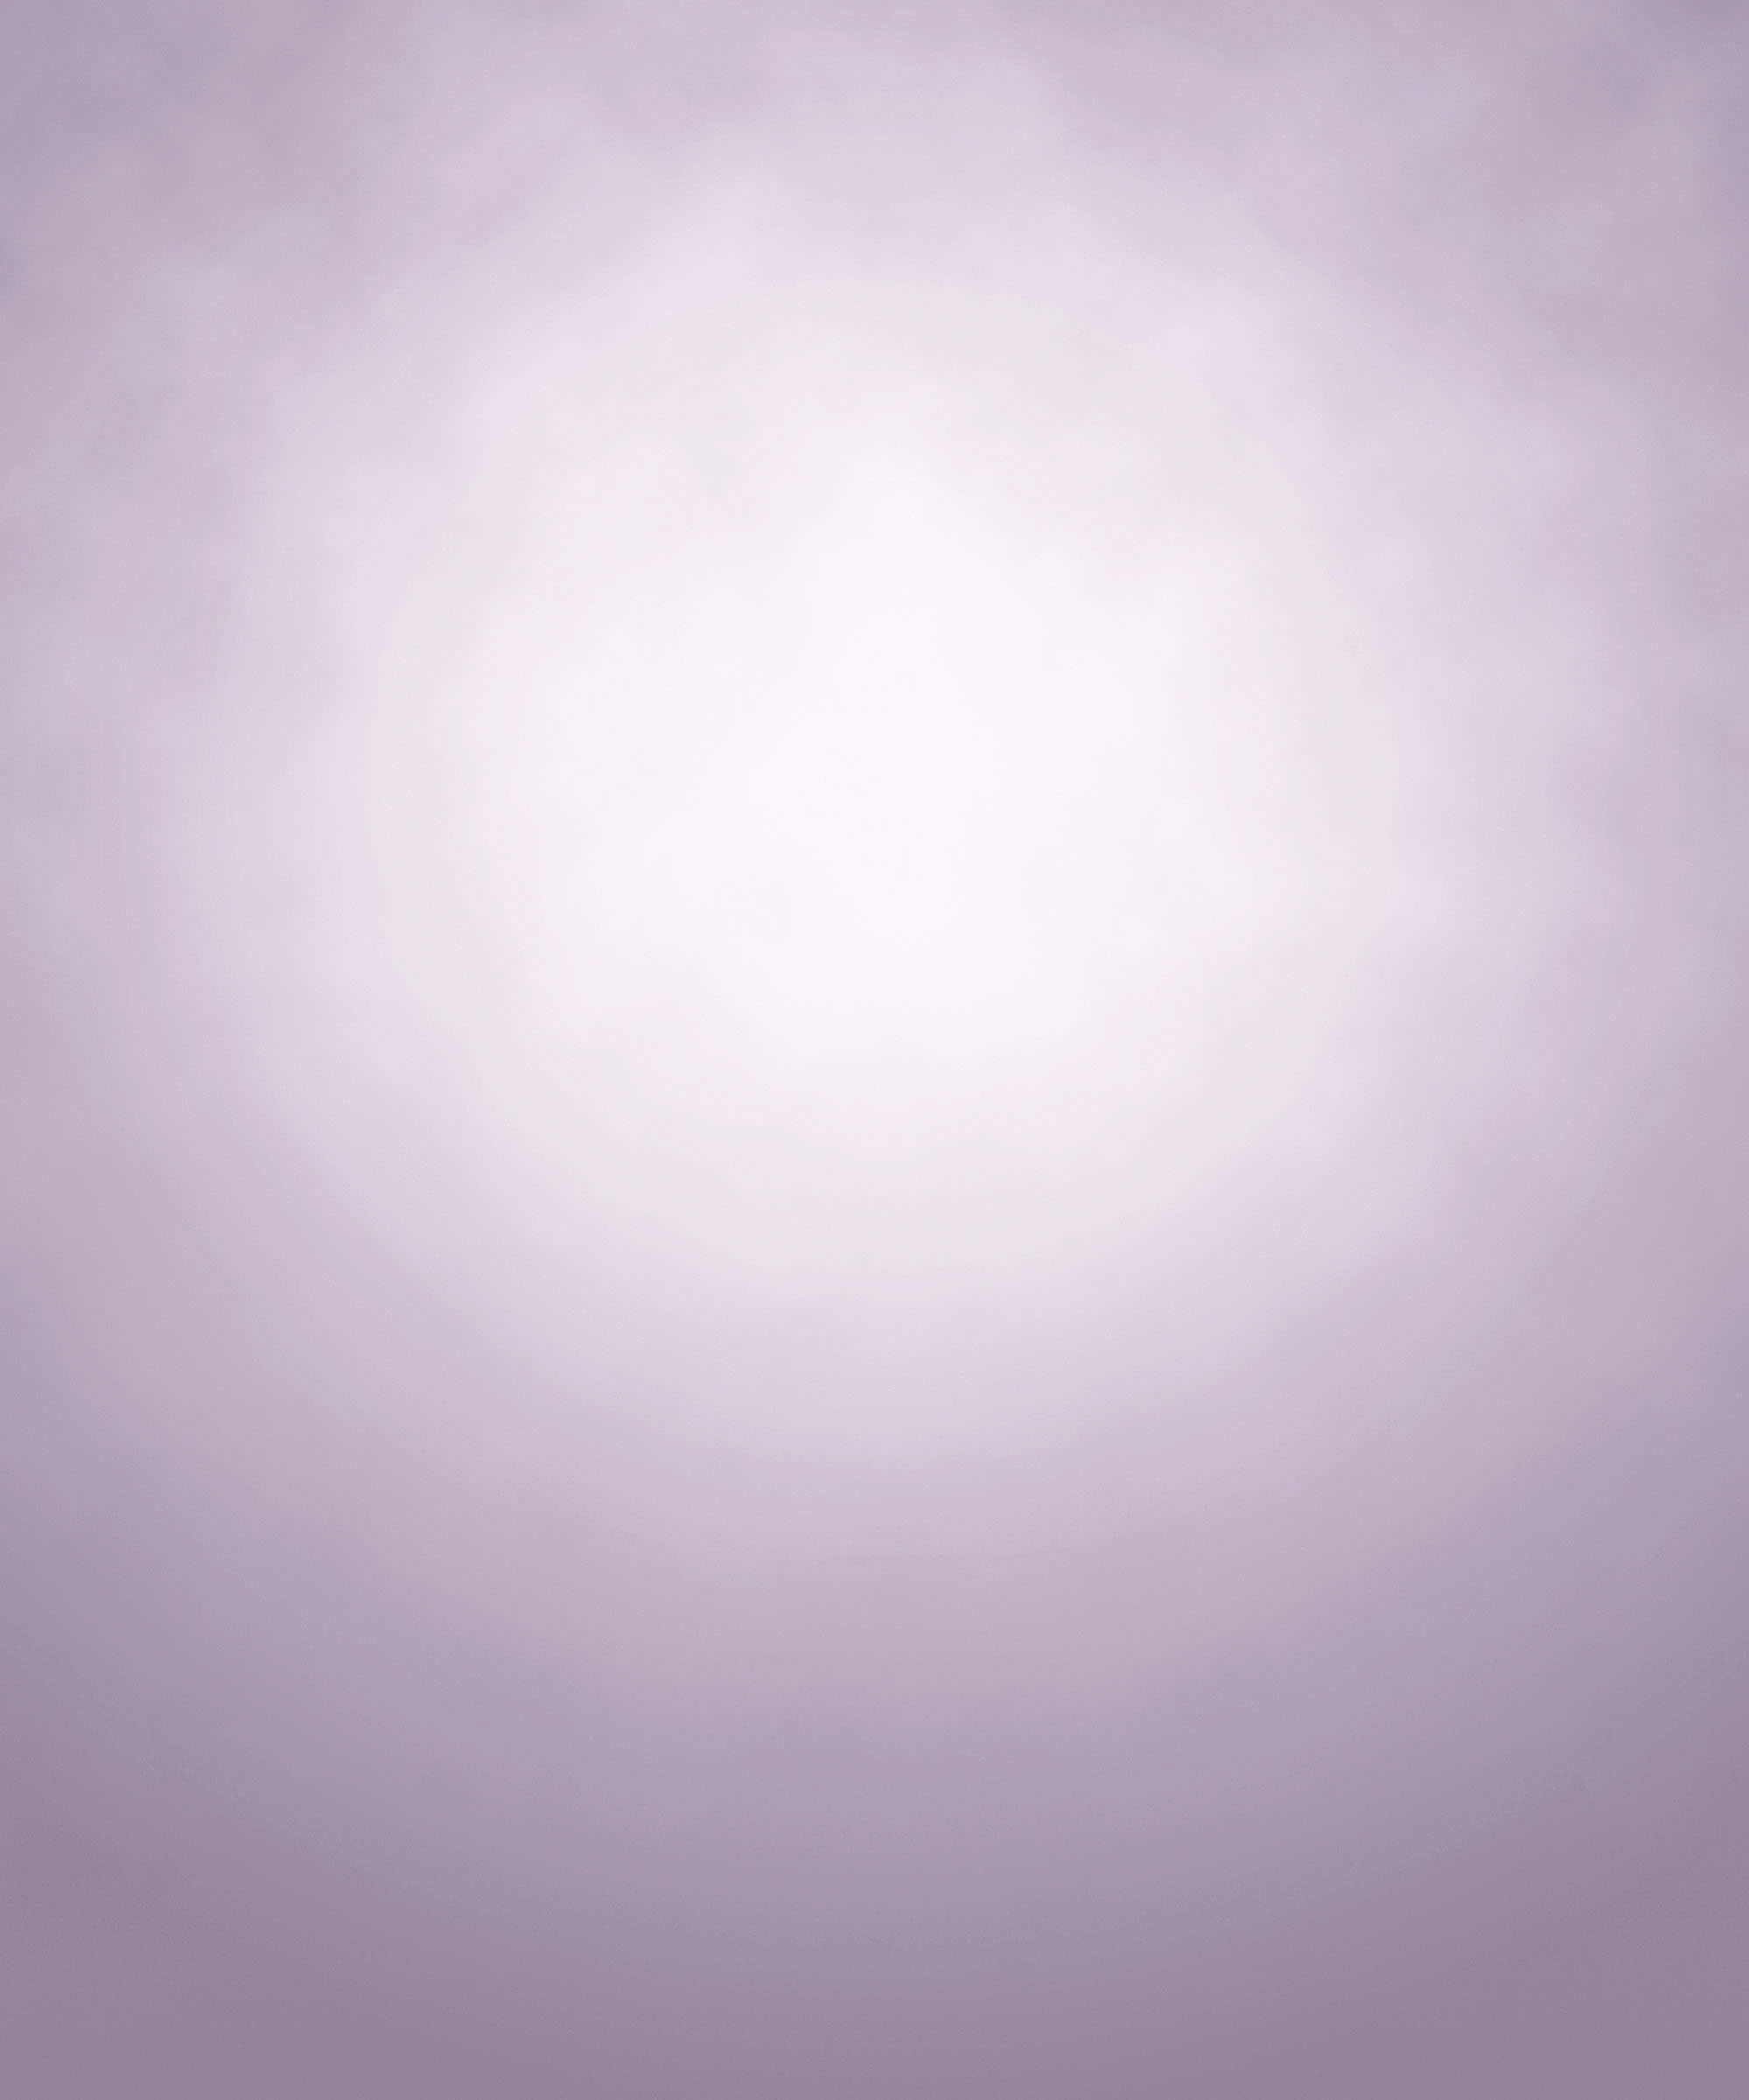 無料のハイクオリティー遺影背景素材 薄紫のぼんやりした光 遺影素材屋 Com